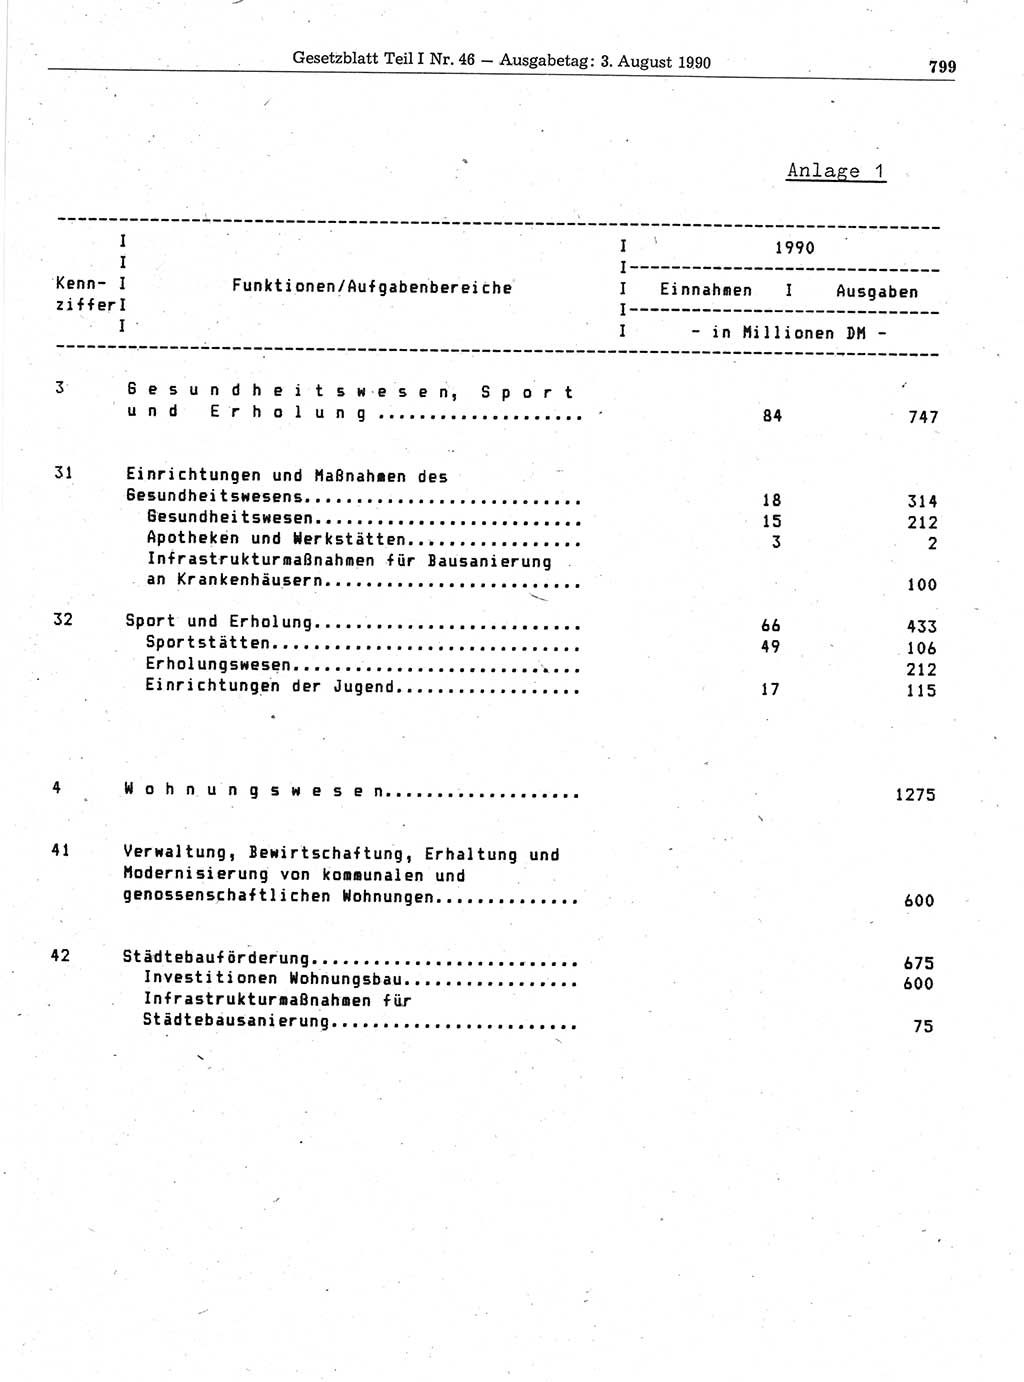 Gesetzblatt (GBl.) der Deutschen Demokratischen Republik (DDR) Teil Ⅰ 1990, Seite 799 (GBl. DDR Ⅰ 1990, S. 799)